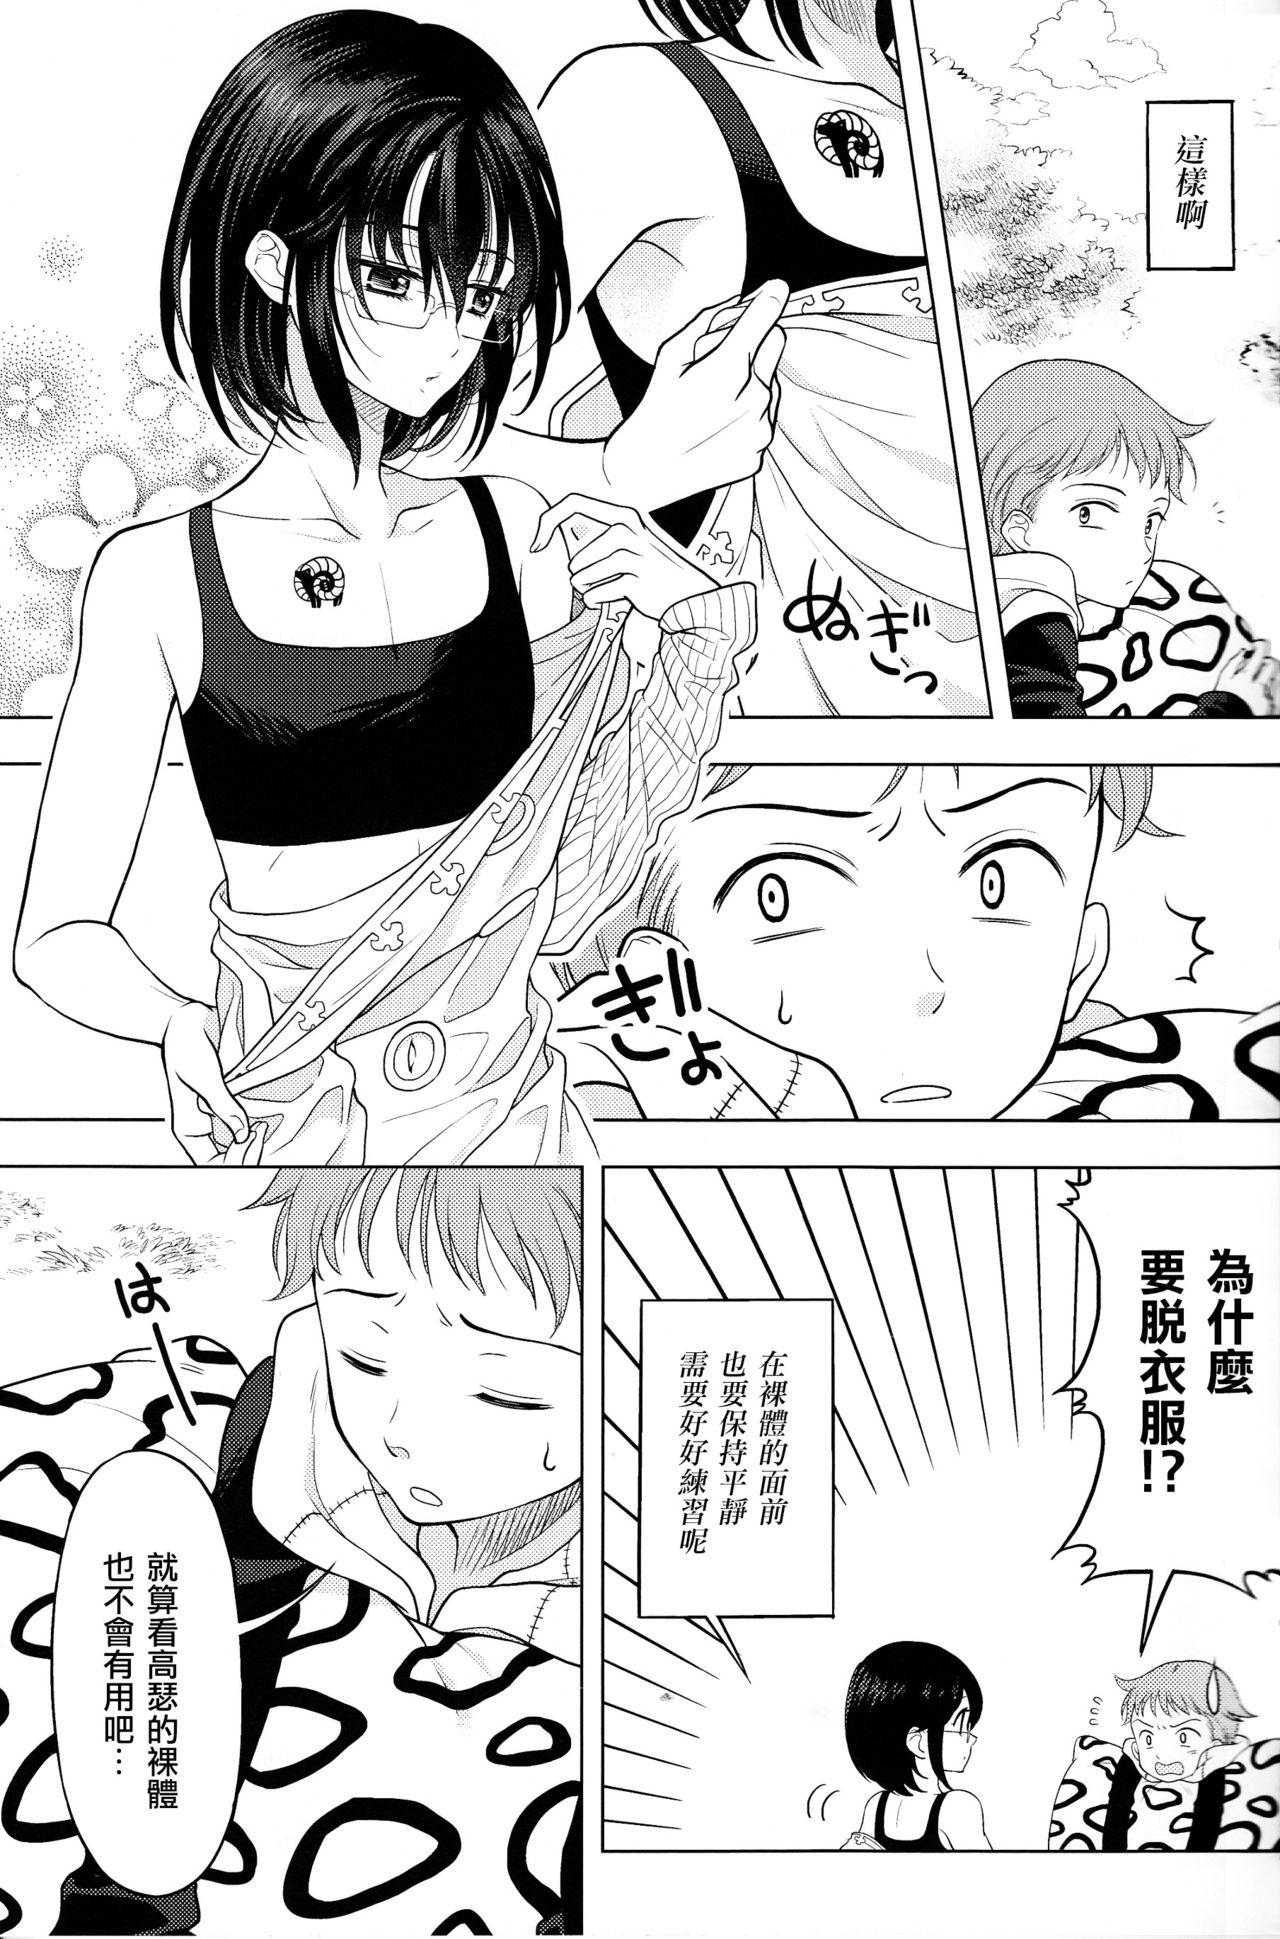 Ejaculations Shikiyoku, tsumibukashi - Lust is sinful - Nanatsu no taizai Enema - Page 6